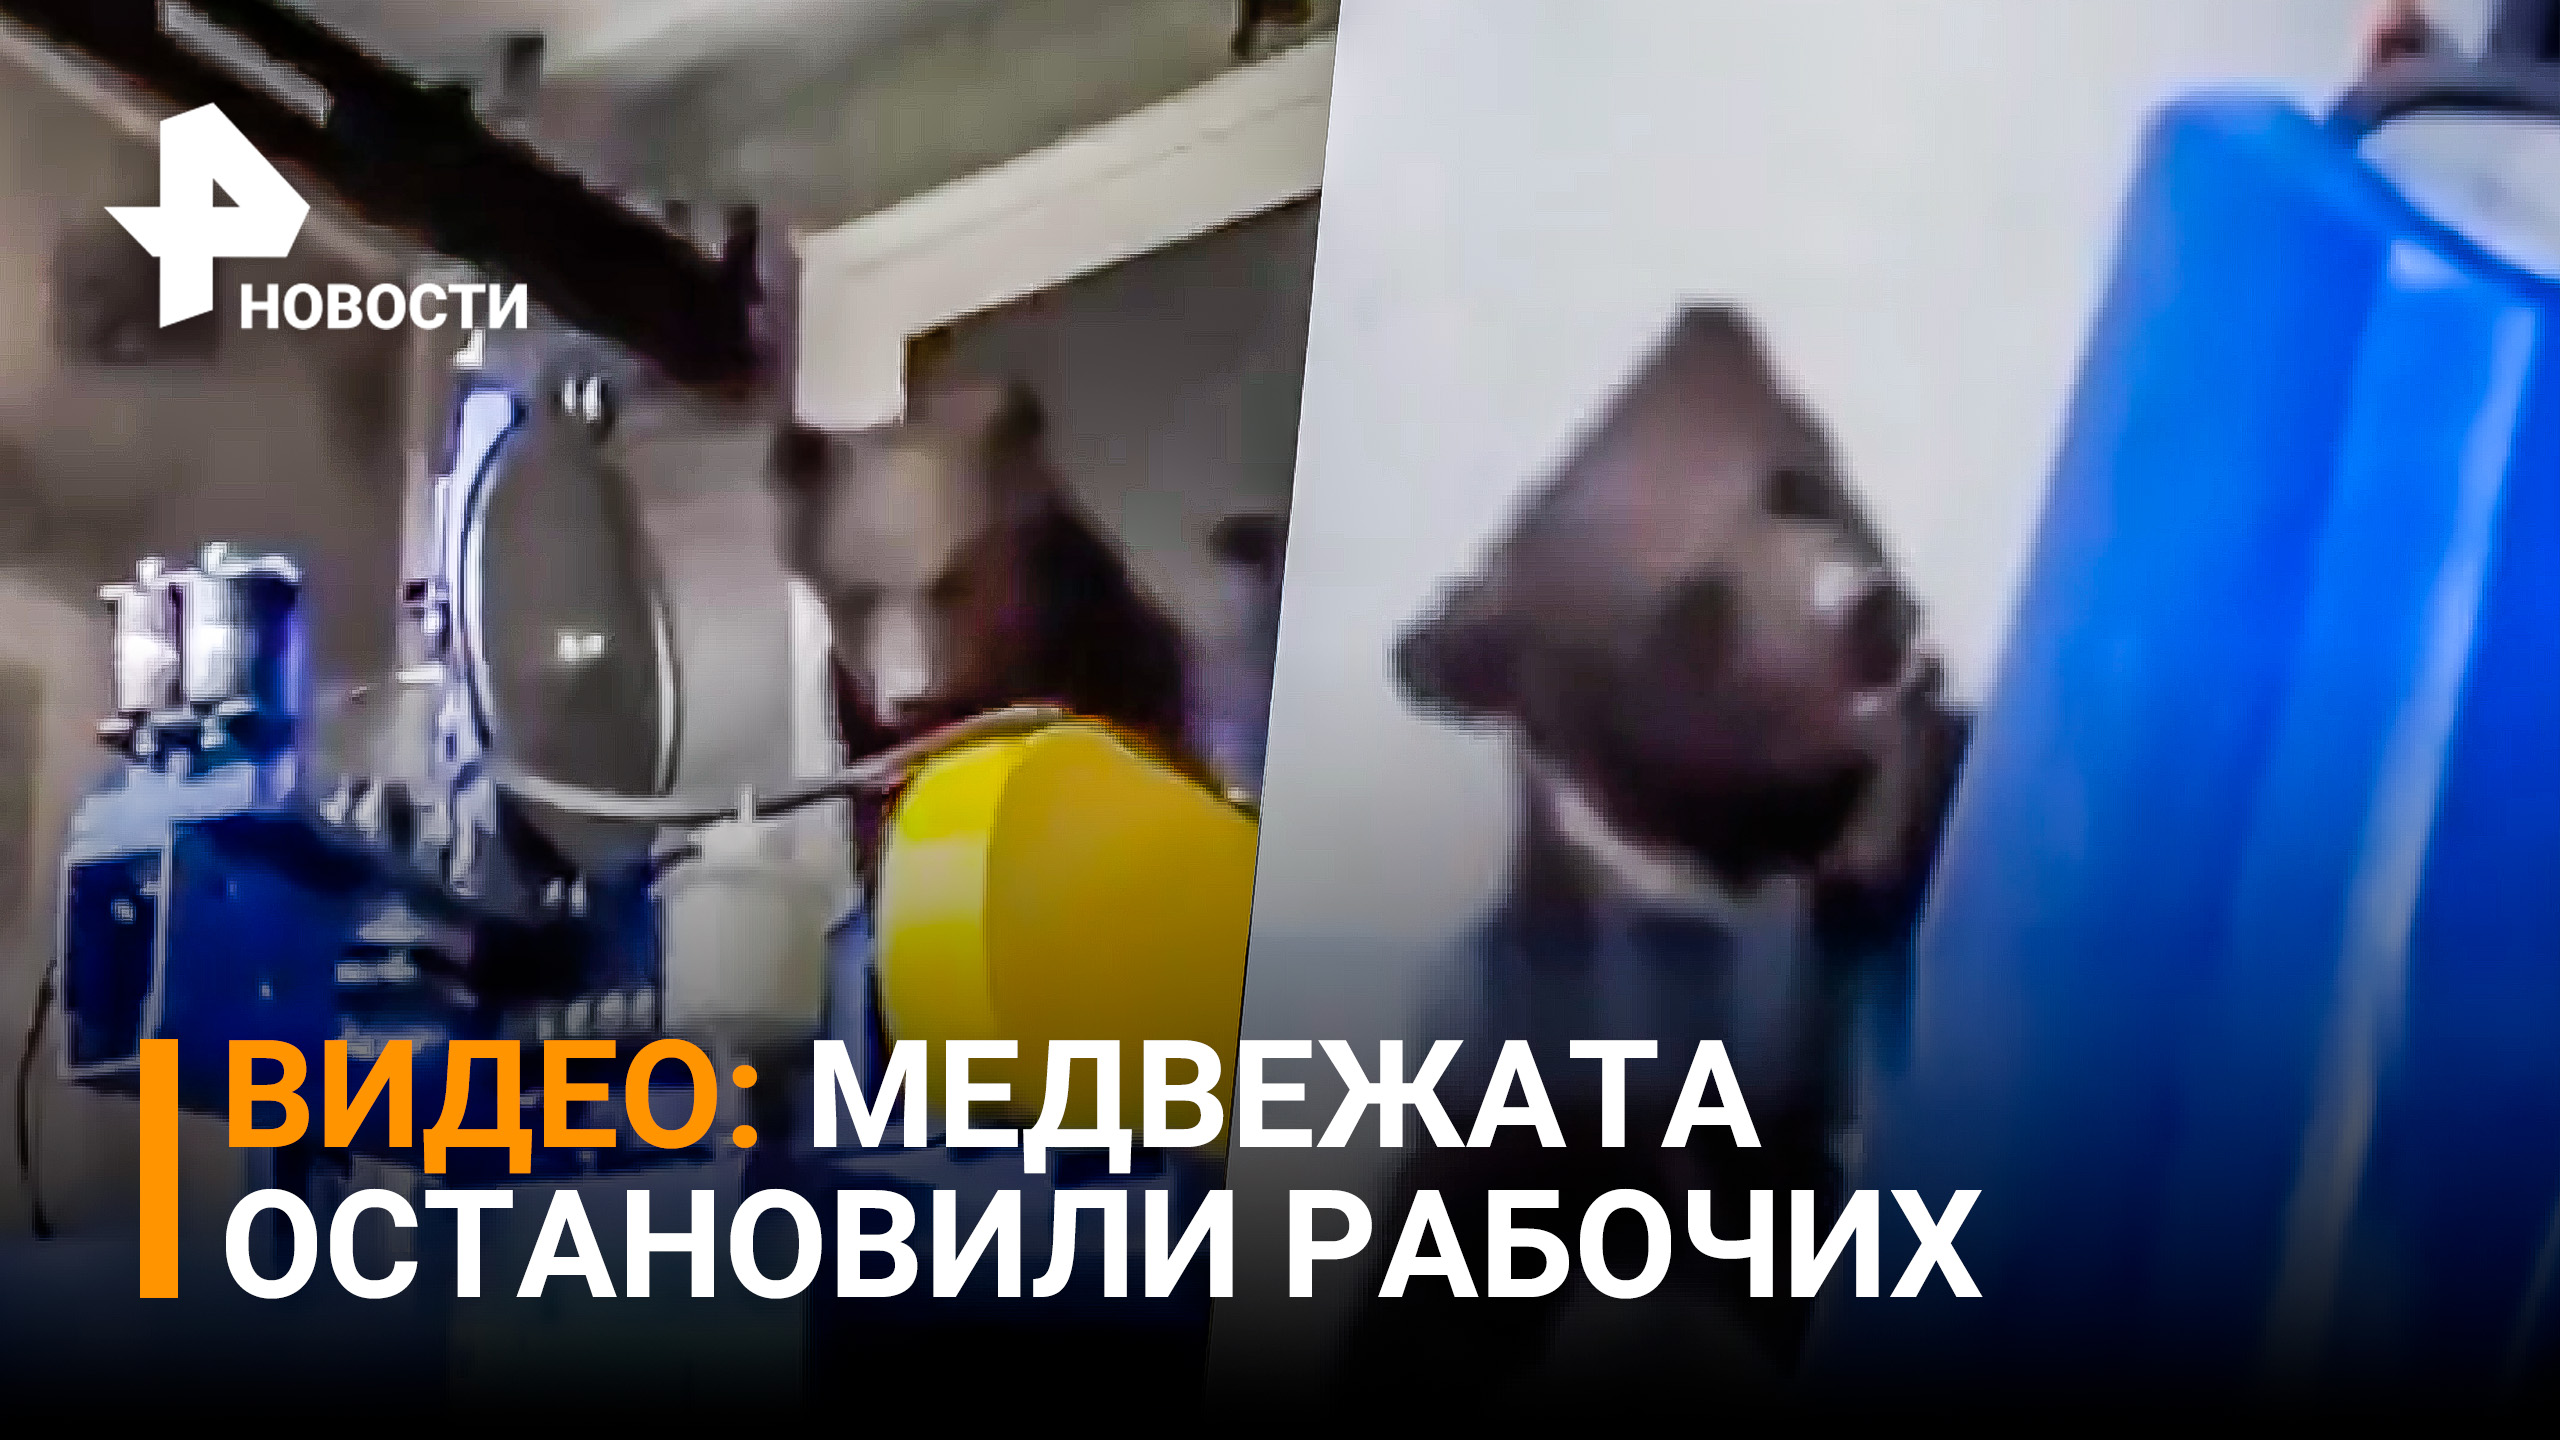 Бой медвежат с рабочими в Томской области удивил / РЕН Новости